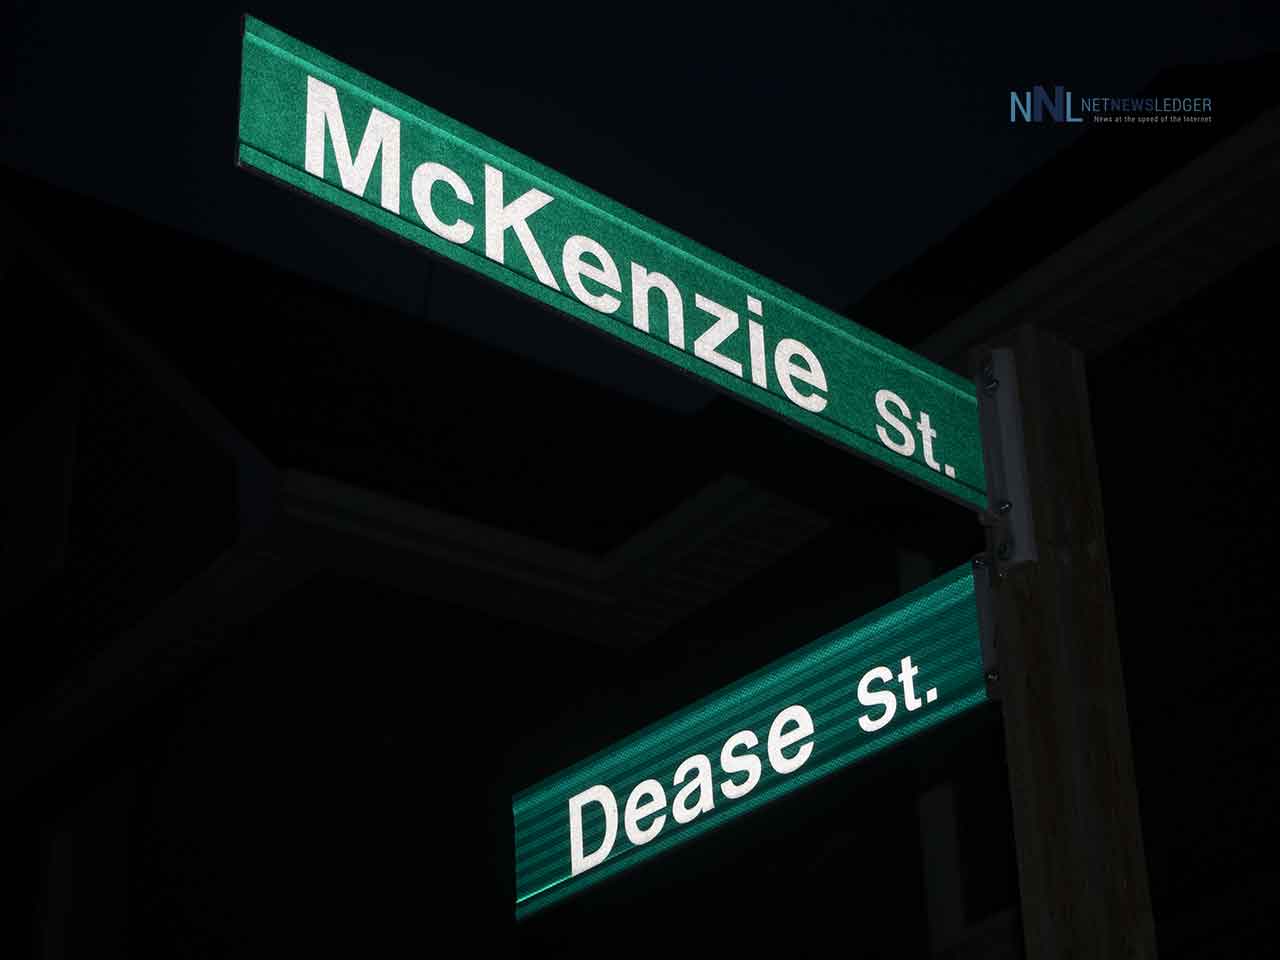 Dease and MacKenzie Street